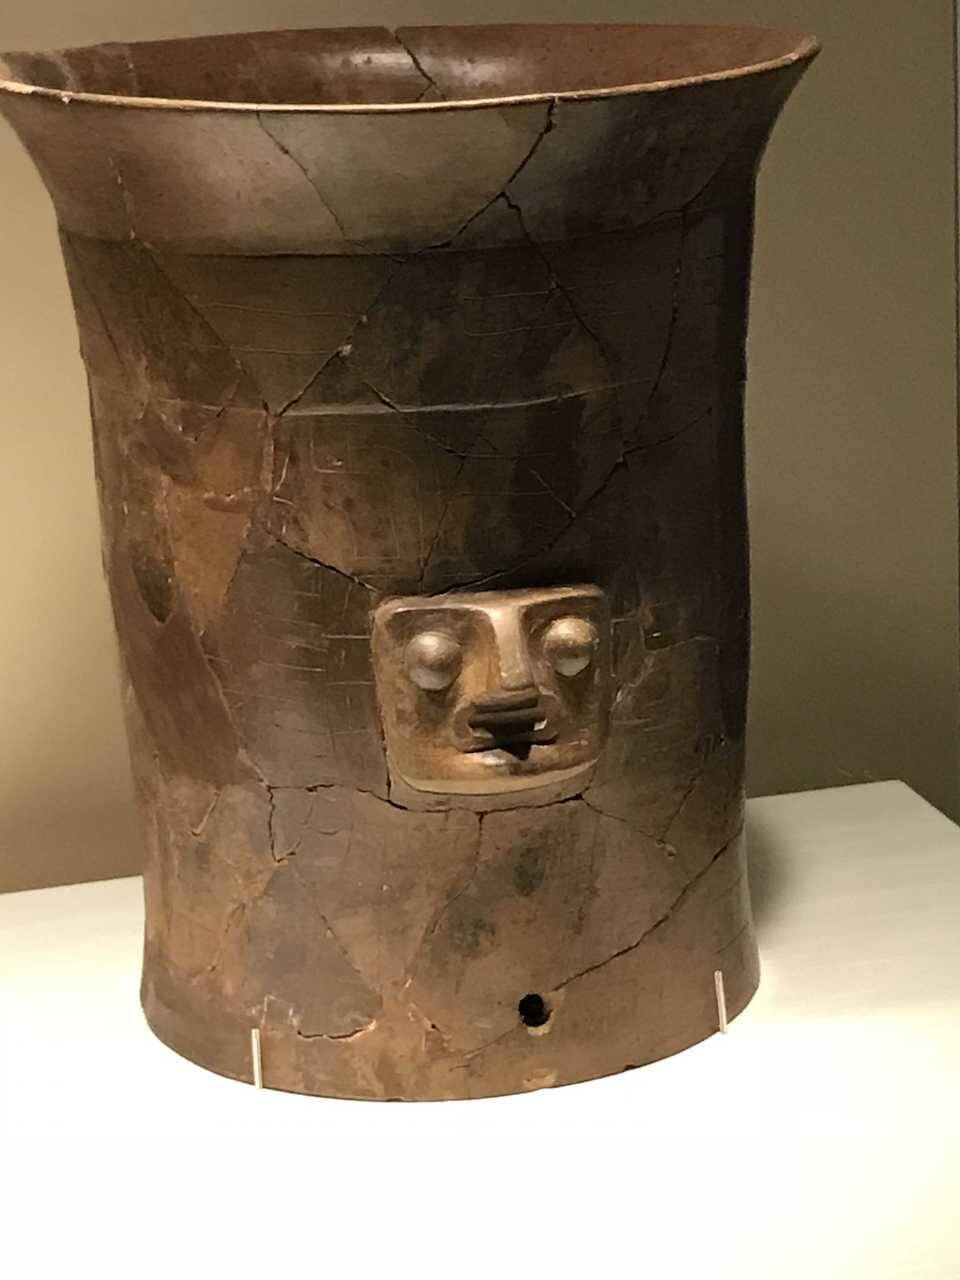 「アンデスのフチ子」「アゴ呼ぶな！」 古代アンデス文明展で変顔コンテストを開催する理由